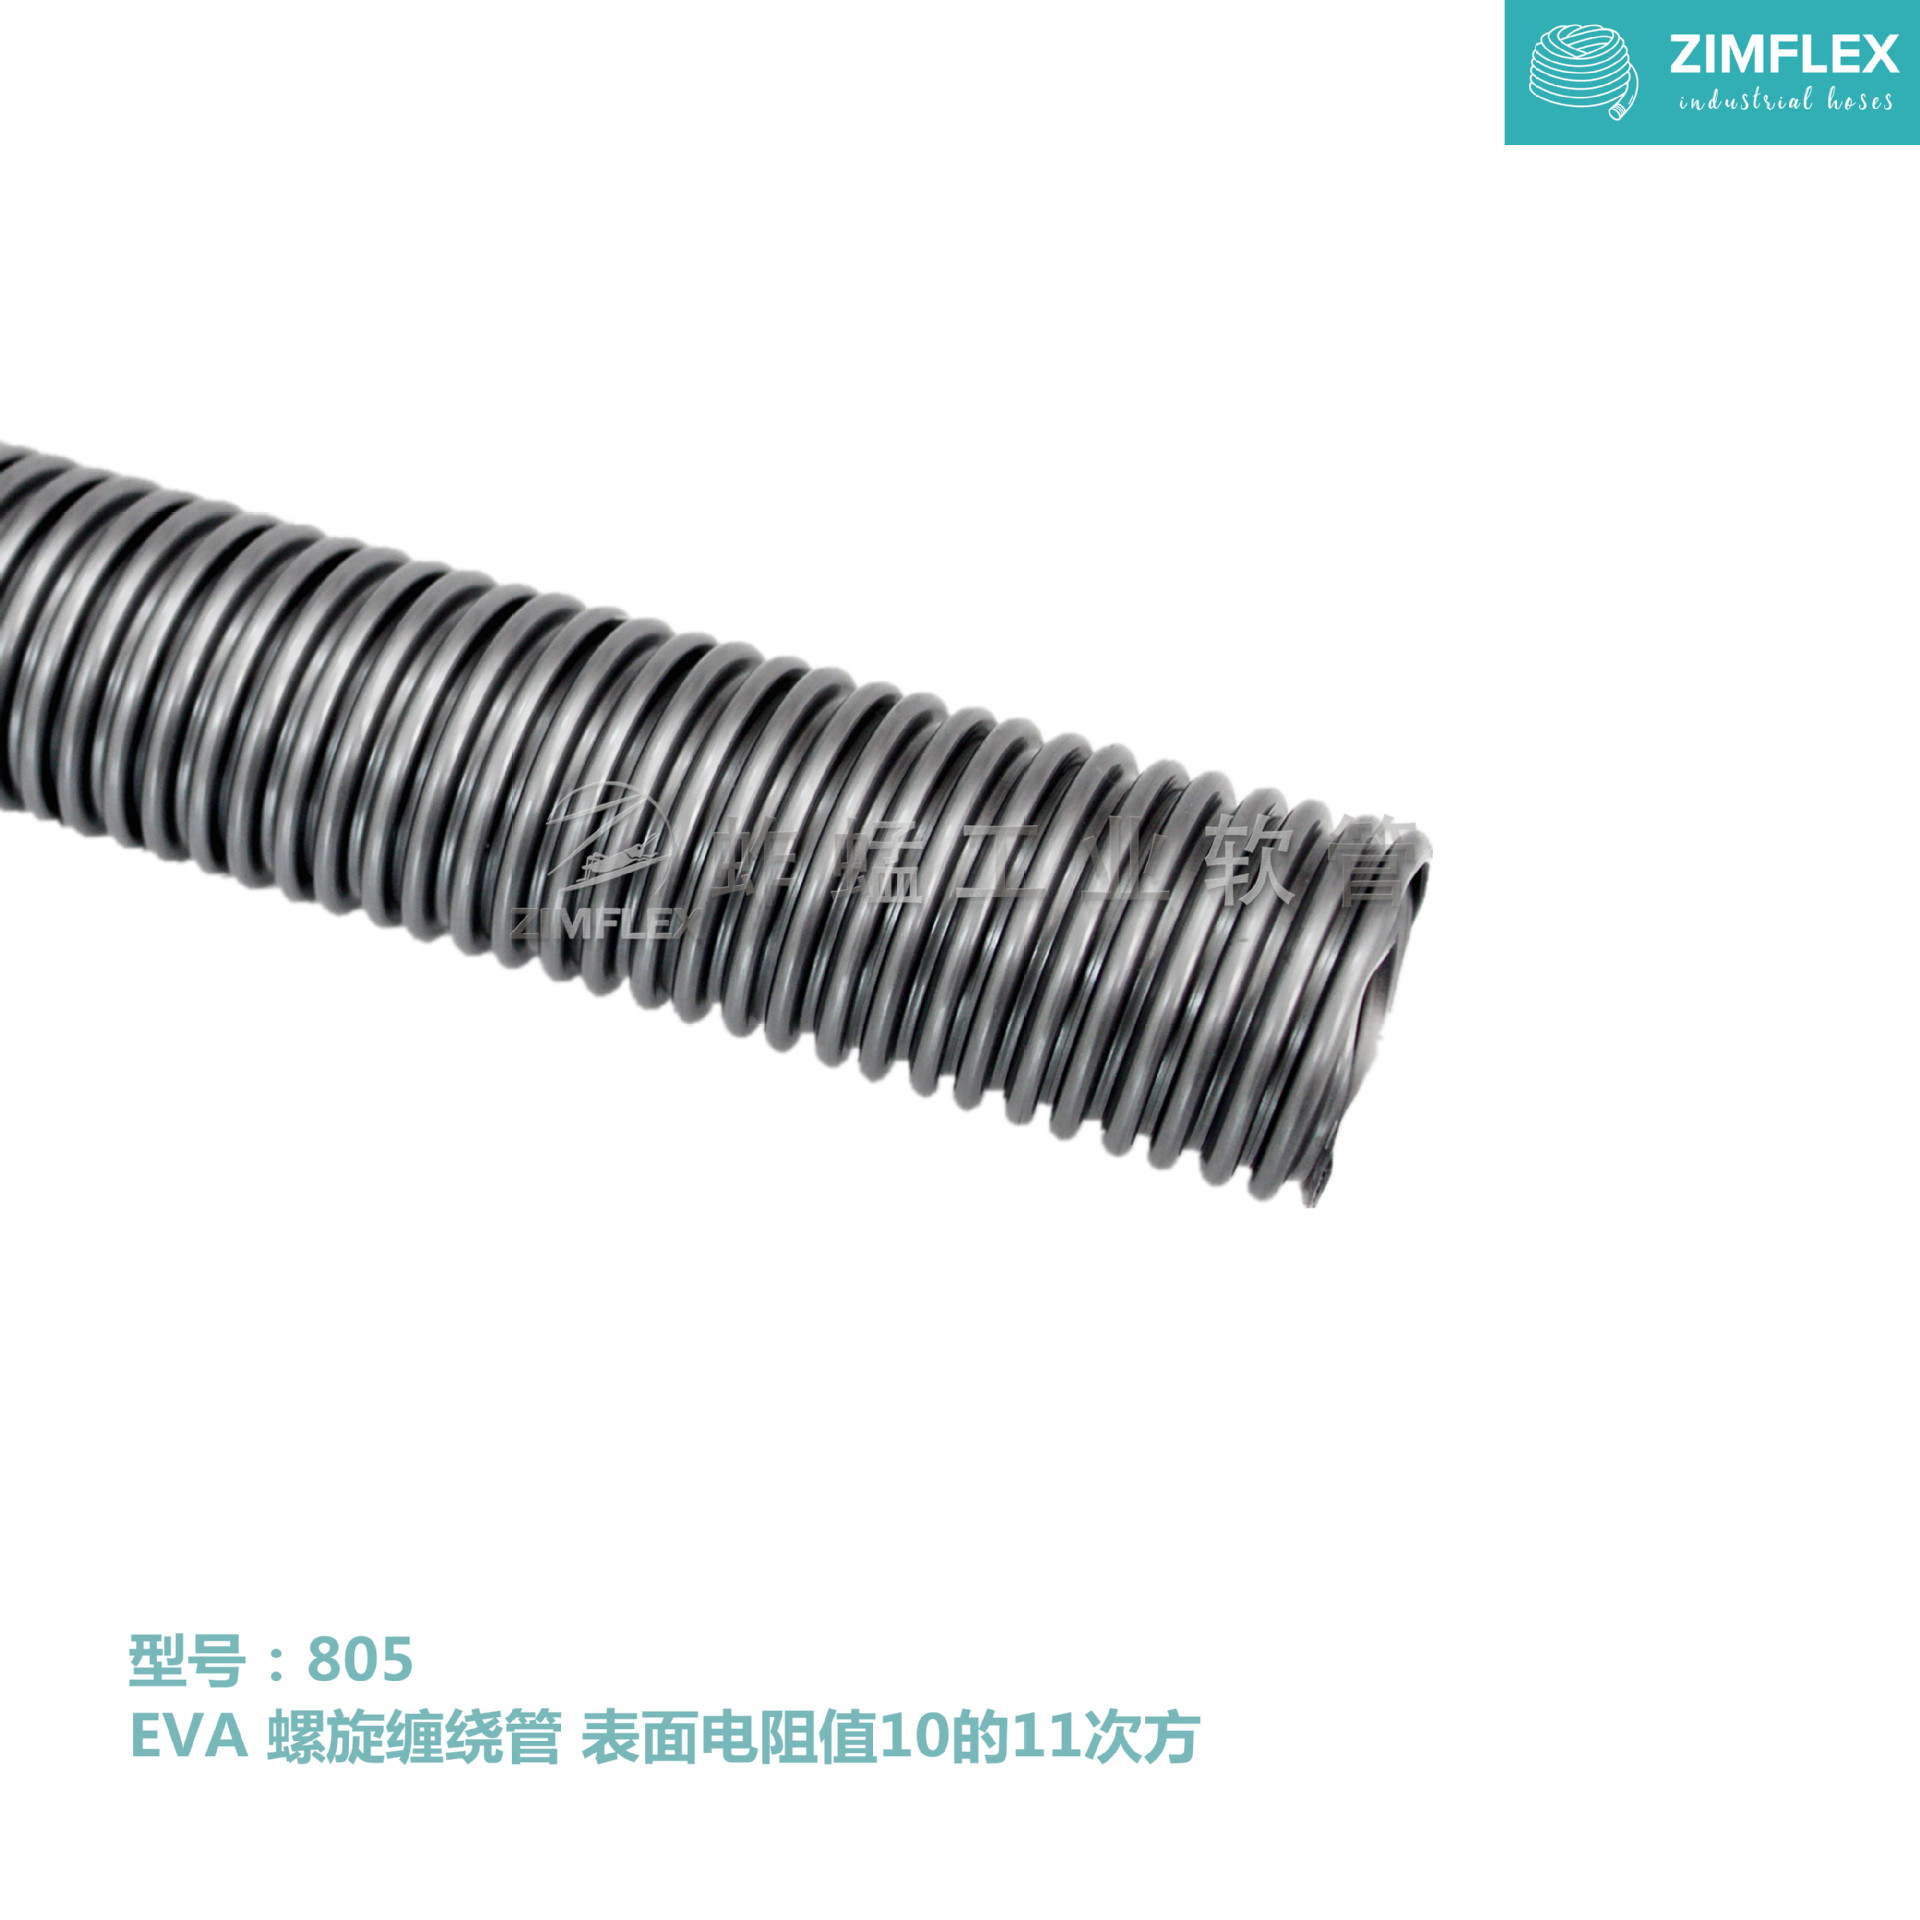 805 EVA螺旋缠绕管 真空吸排软管 吸尘器软管 通风软管 导电软管